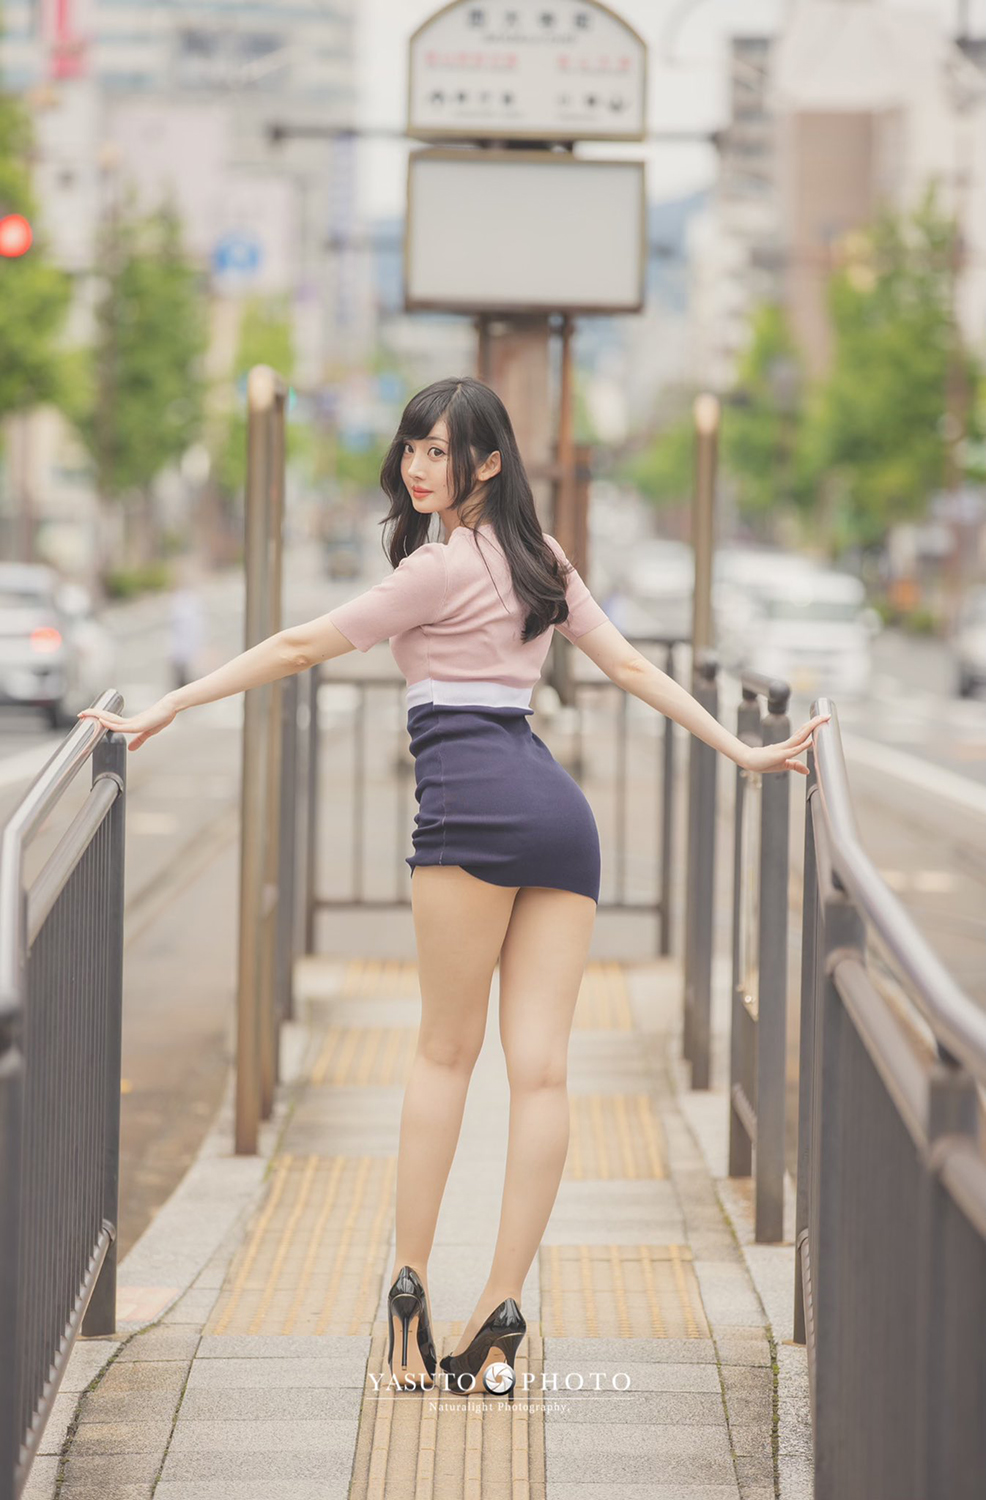 Yasuto Women Asian Brunette Long Hair Skirt High Waisted High Heels Street 986x1500